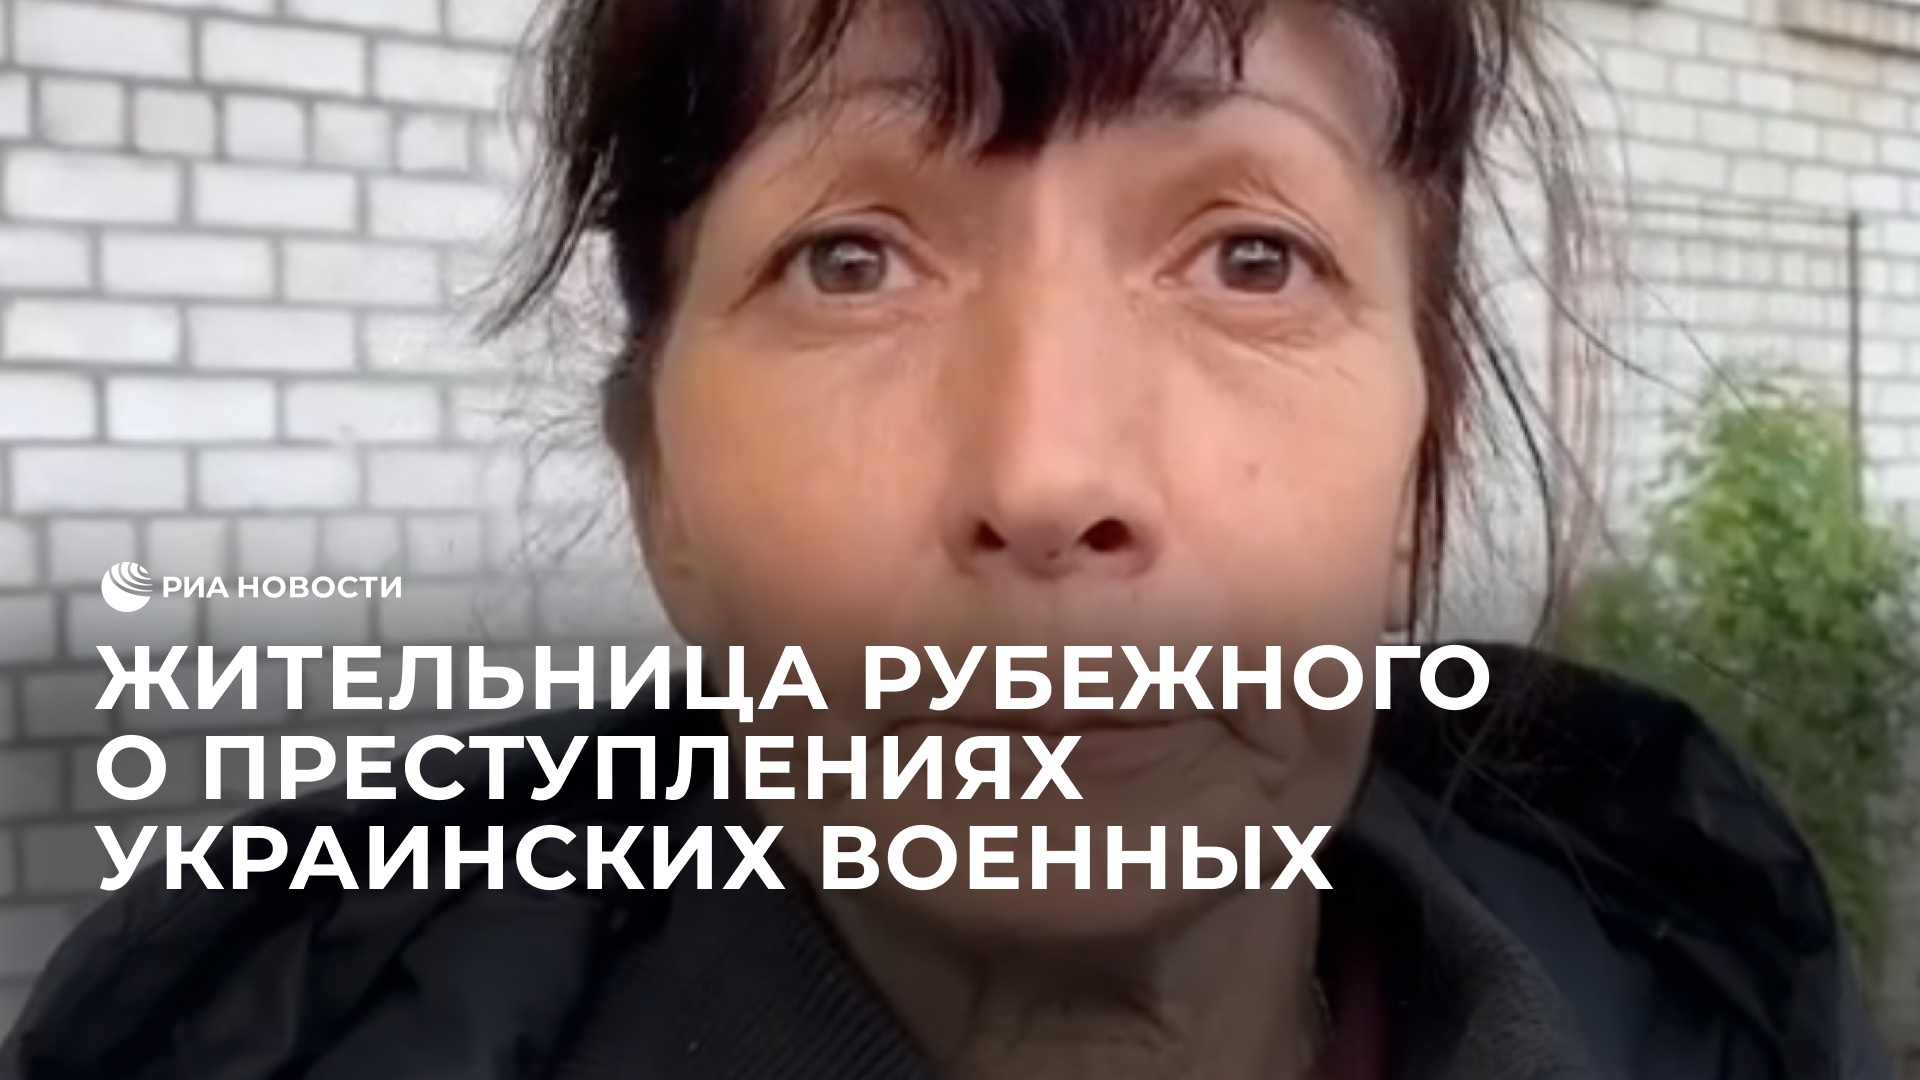 Жительница Рубежного о преступлениях украинских военных